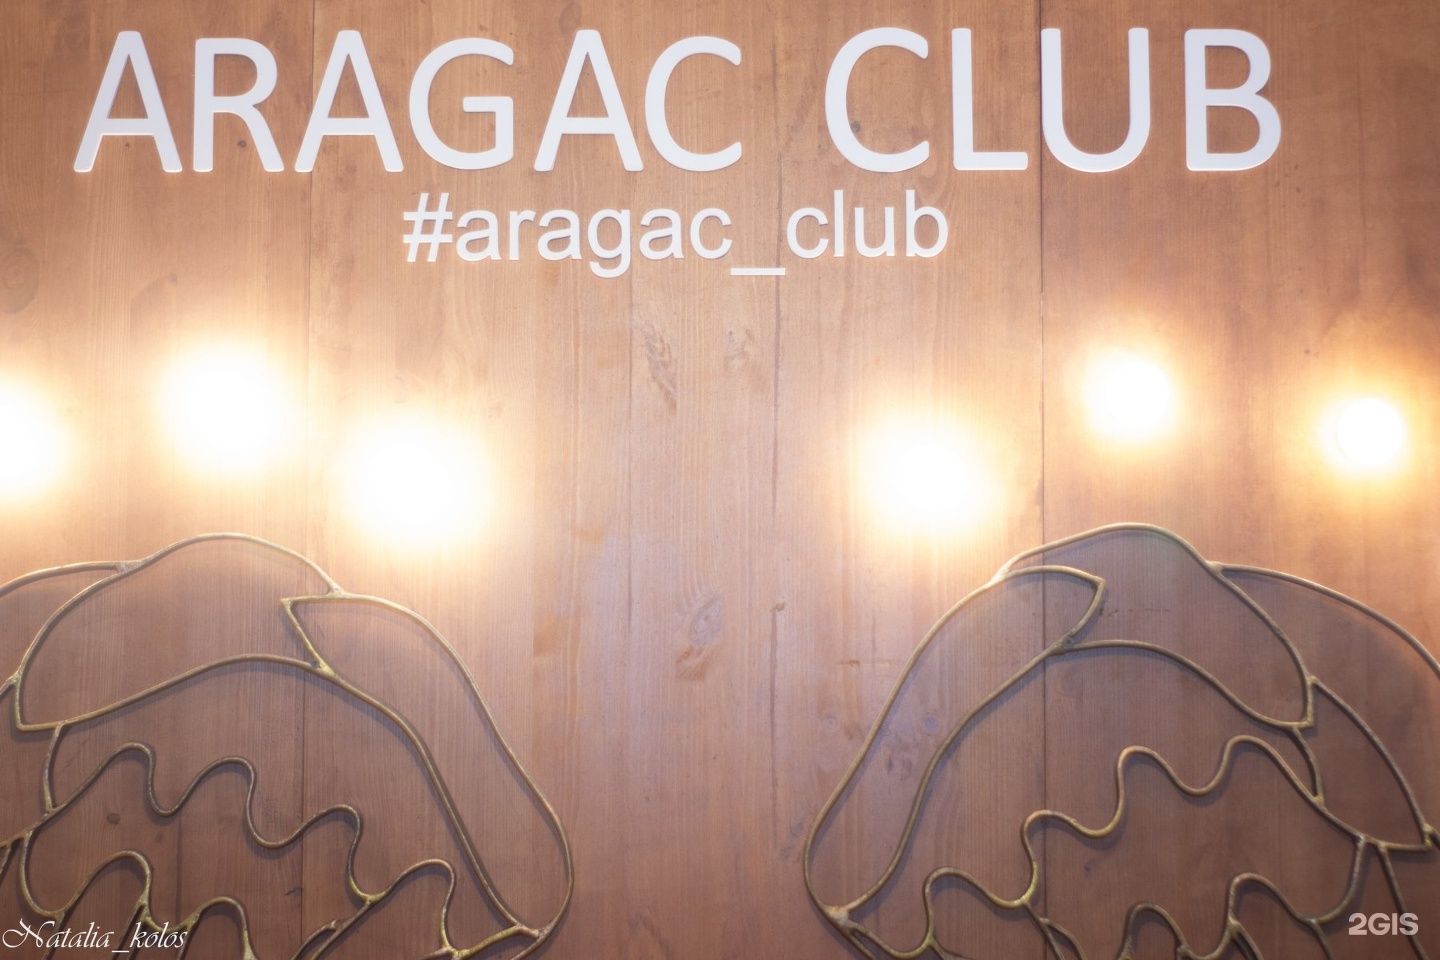 Aragac Club